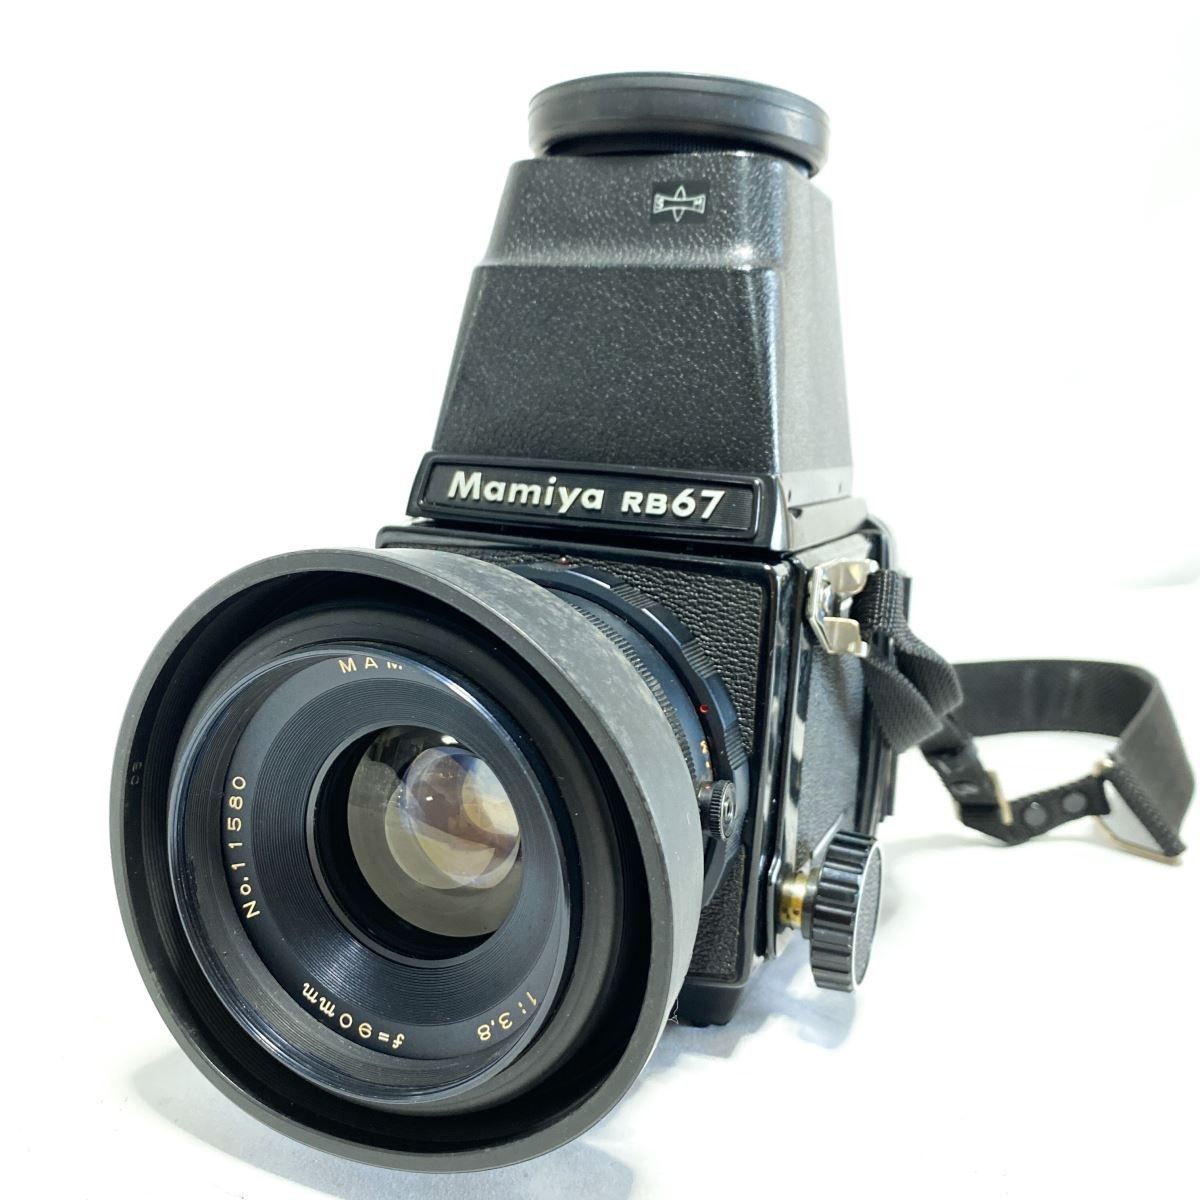 【完動品】MAMIYA RB67 PROFESSIONAL F3.8 90mm マミヤ 6x7 中判一眼レフ フィルムカメラ セコール 標準レンズ C1971_画像1